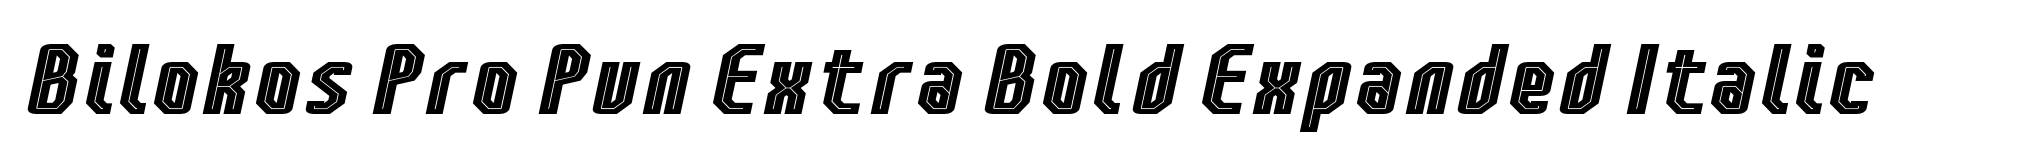 Bilokos Pro Pun Extra Bold Expanded Italic image